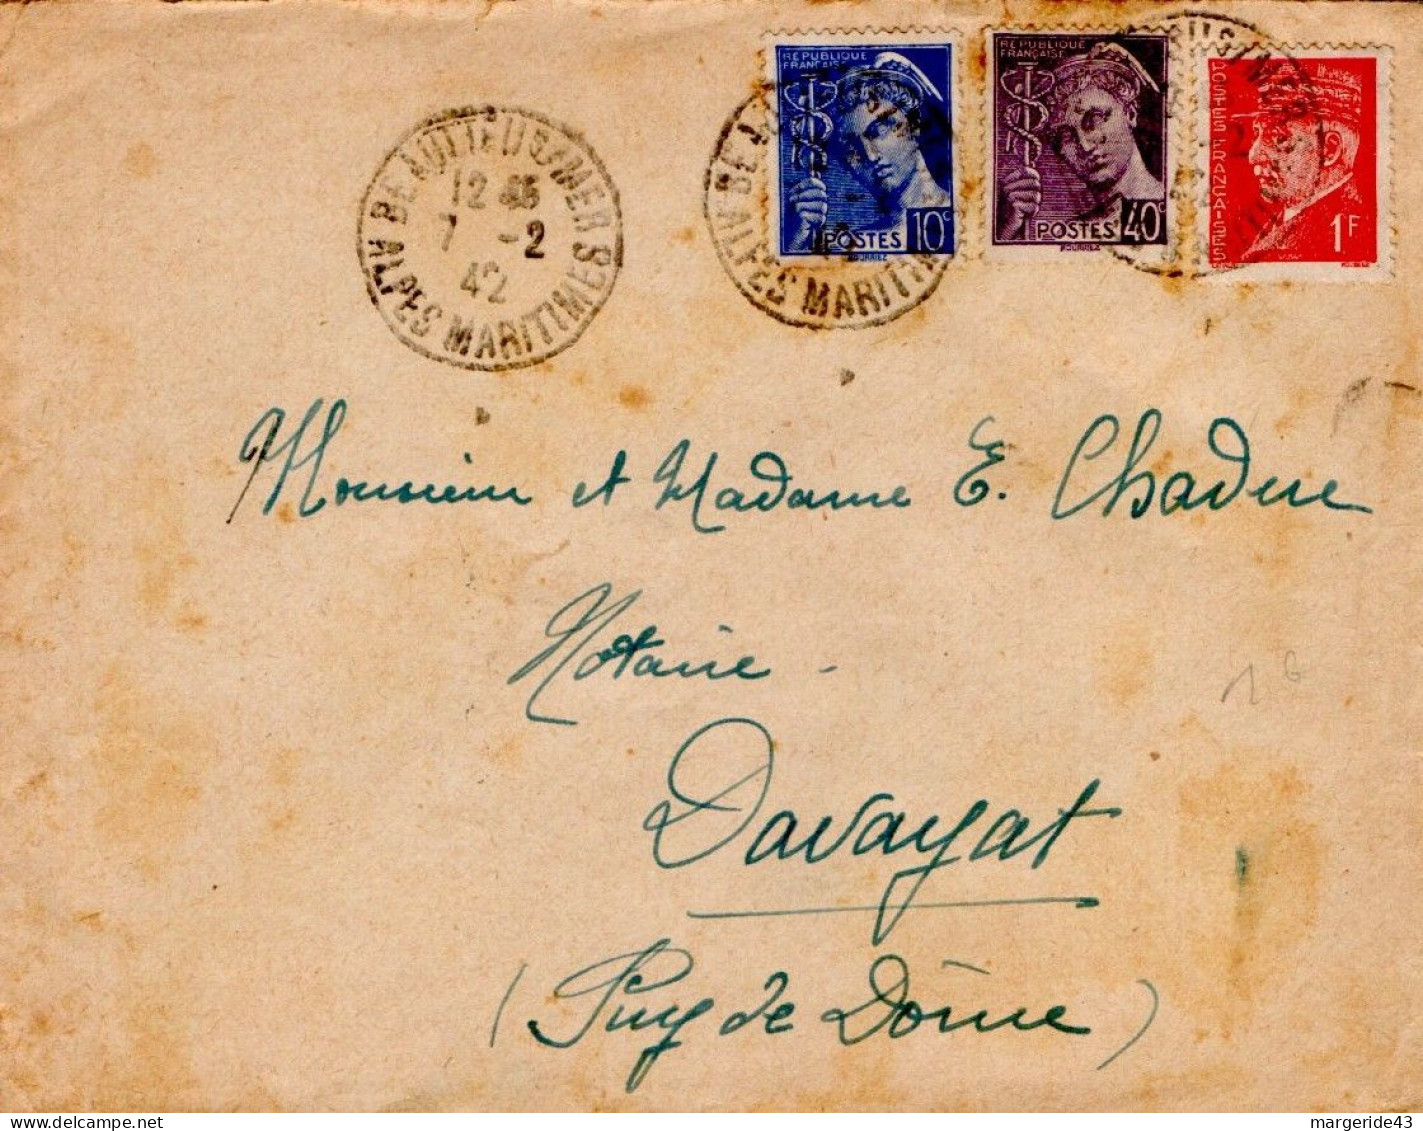 AFFRANCHISSEMENT COMPOSE SUR LETTRE DE BEAULIEU SUR MER (06) 1942 - Postal Rates